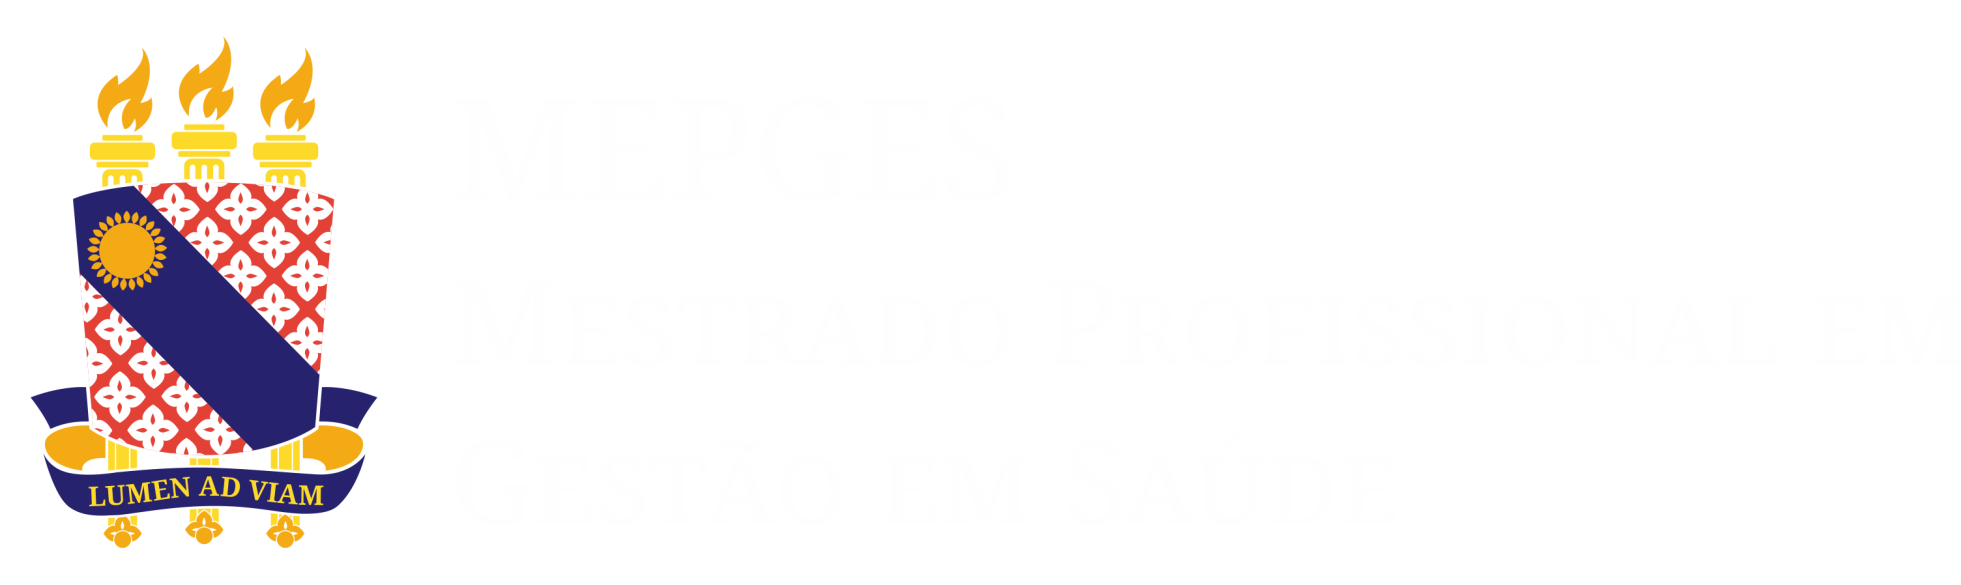 Mepges_logo